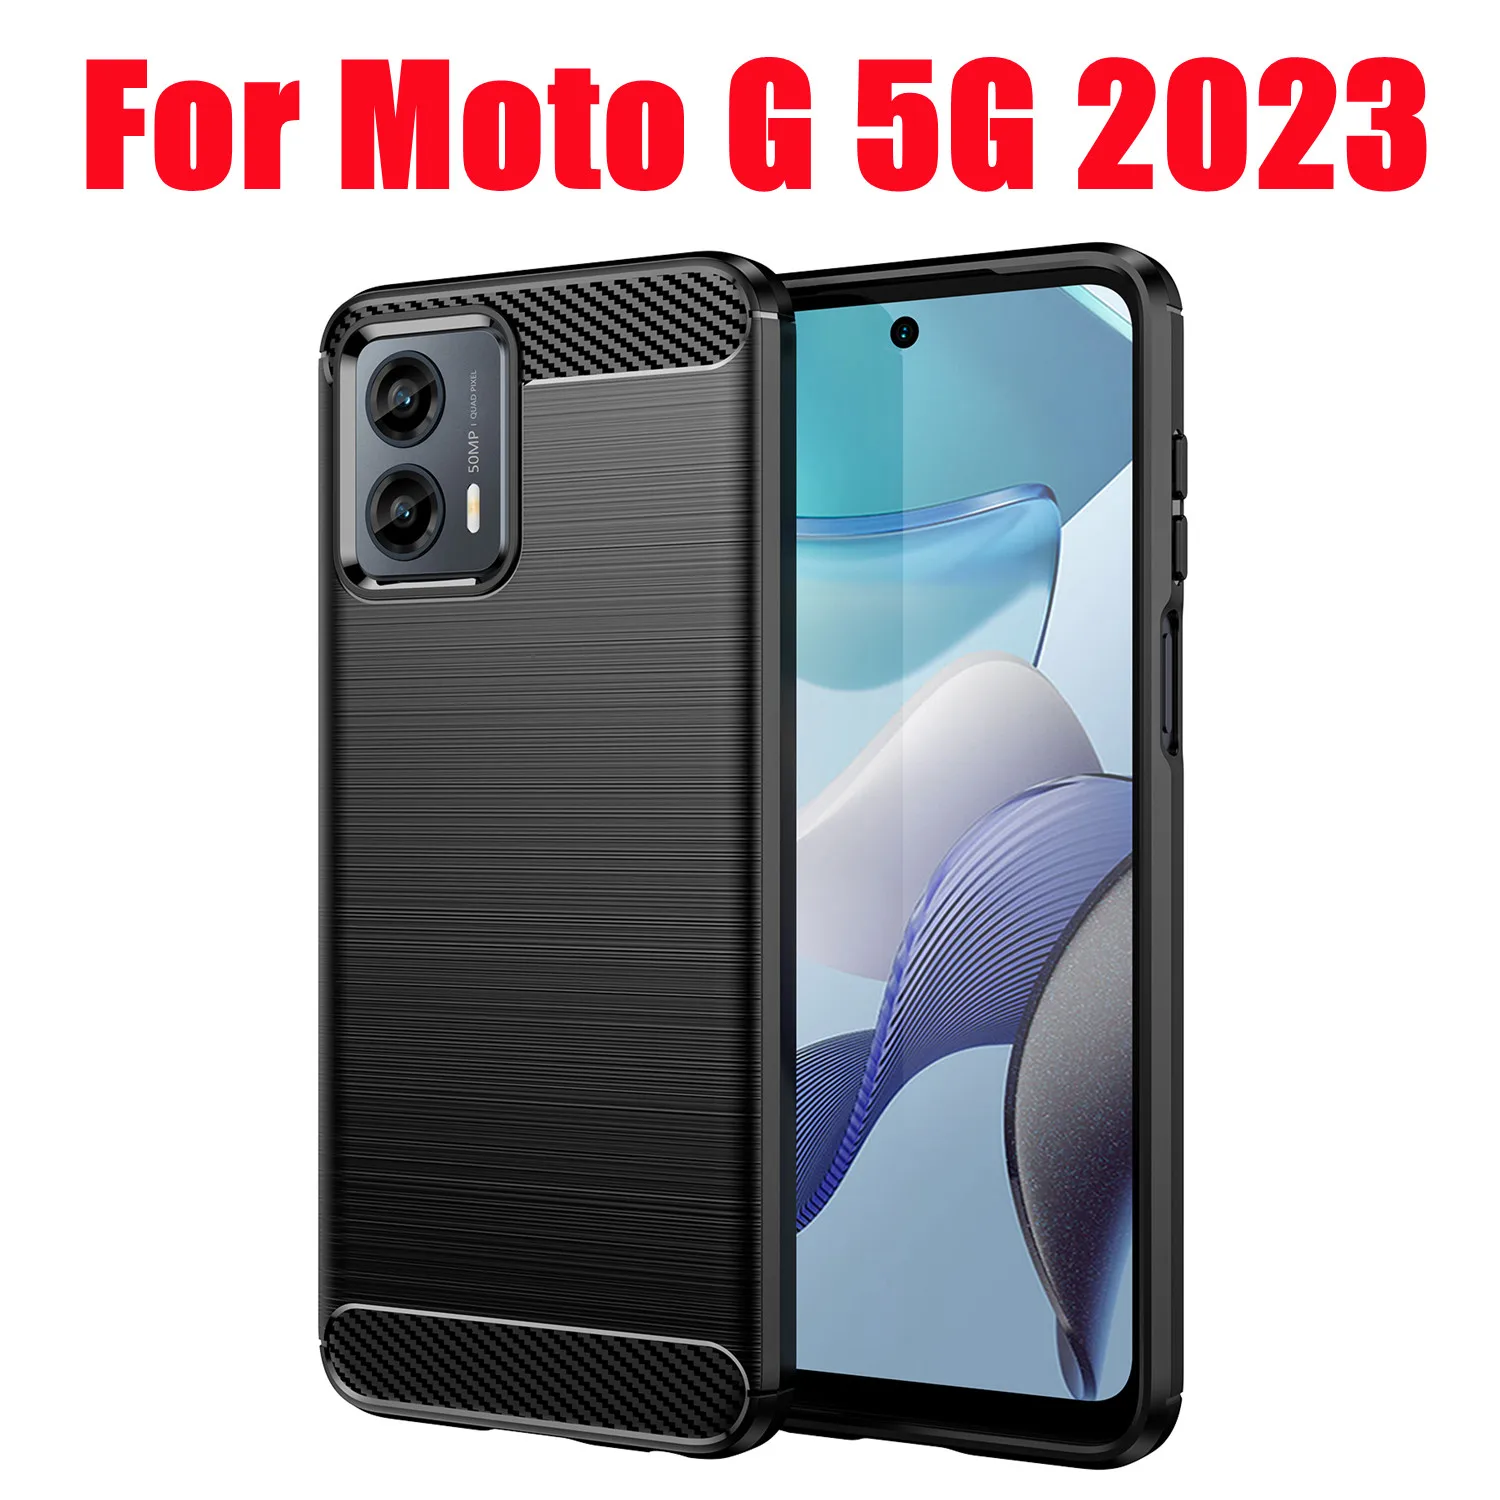 Чехол, устойчивый к царапинам, тонкий силиконовый, мягкая внутренняя крышка из ТПУ подходит для чехла для телефона Motorola Mote G 5G 2023